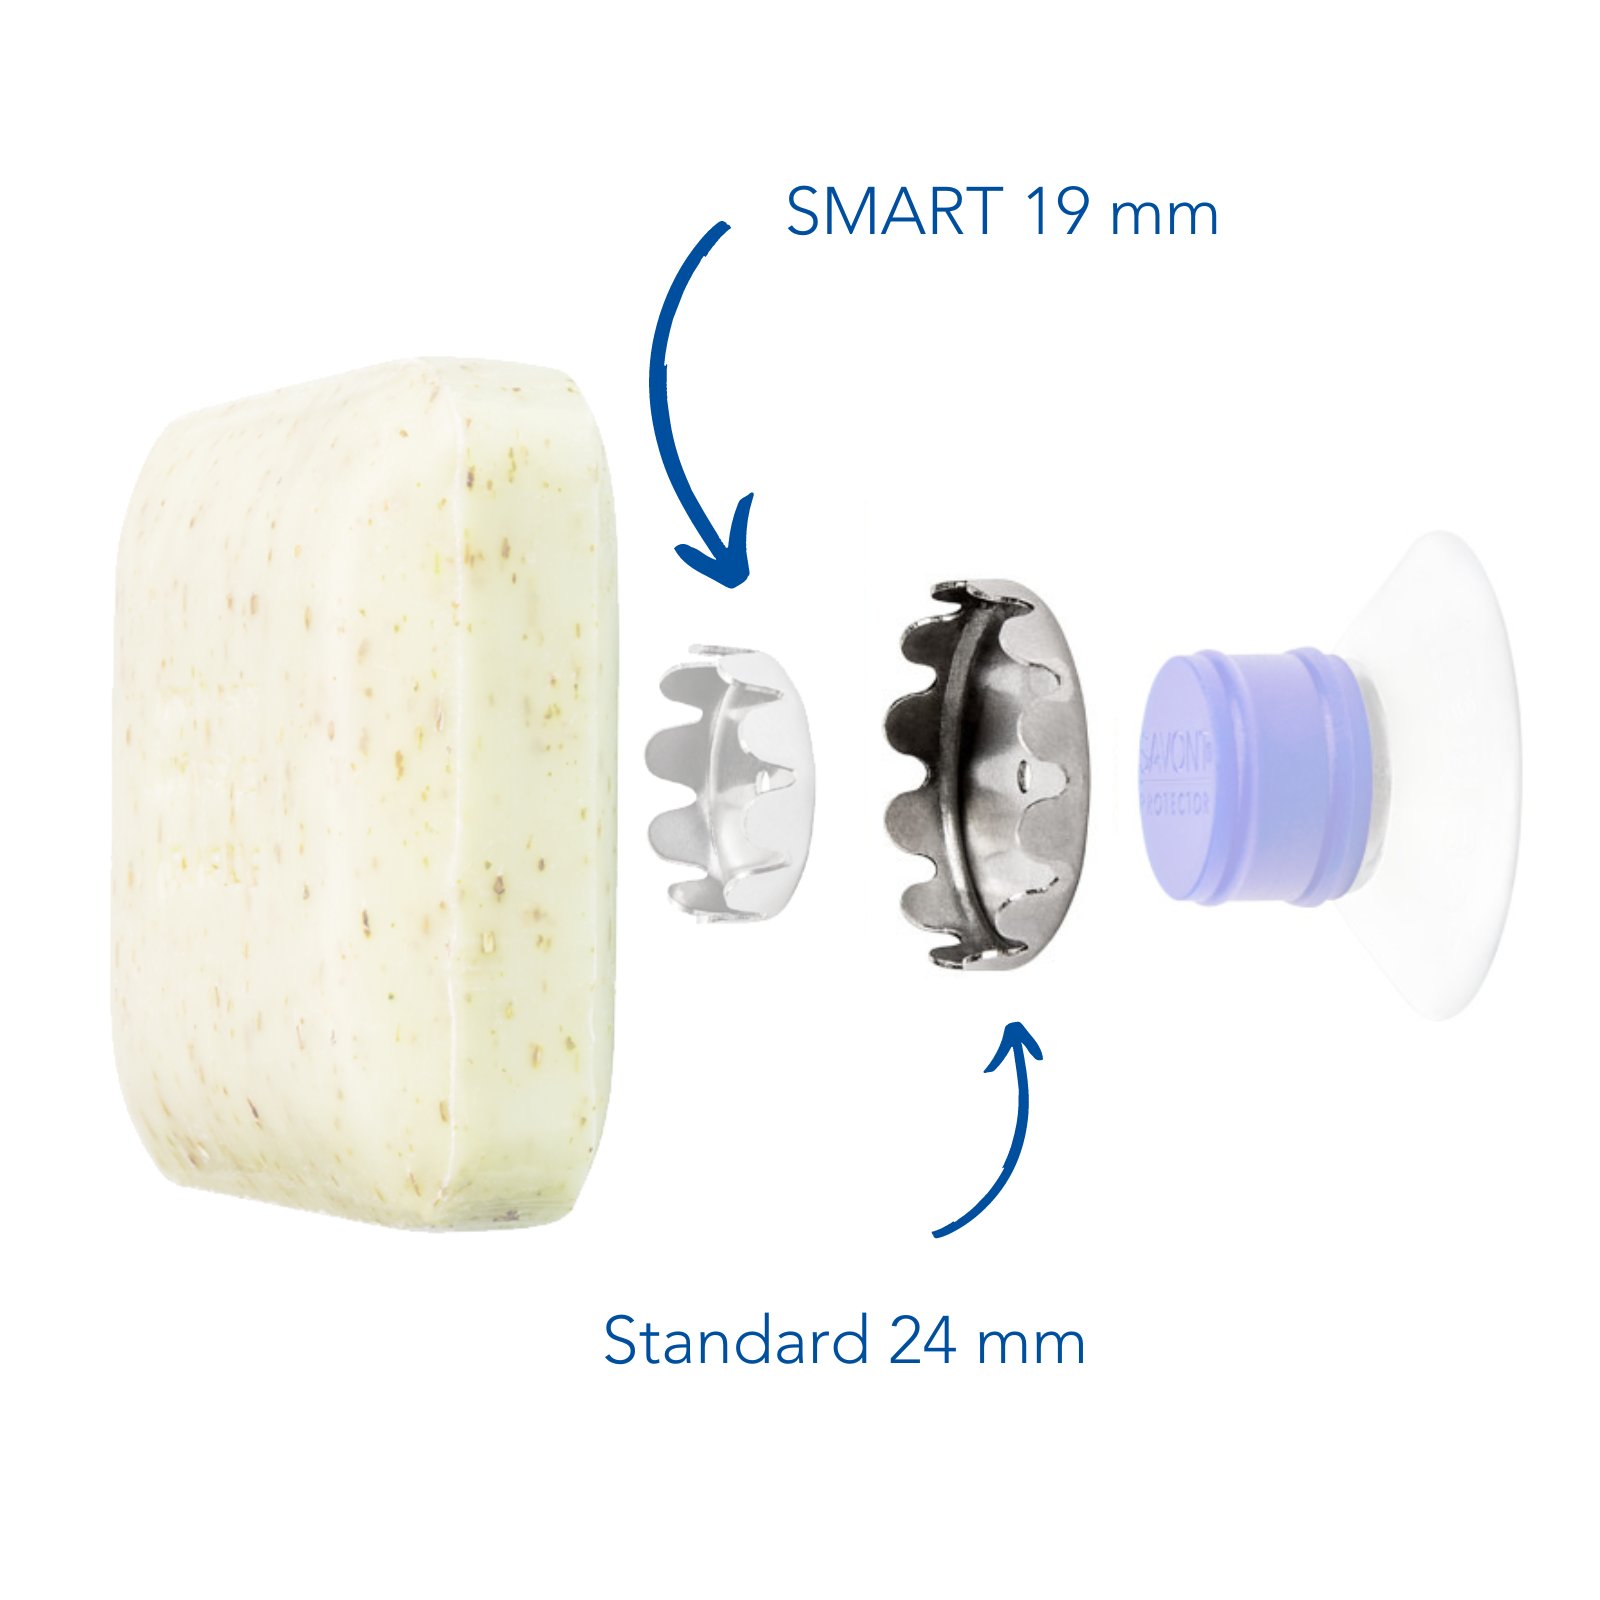 SAVONT bietet zwei Arten von Seifenplättchen an Standard und SMART